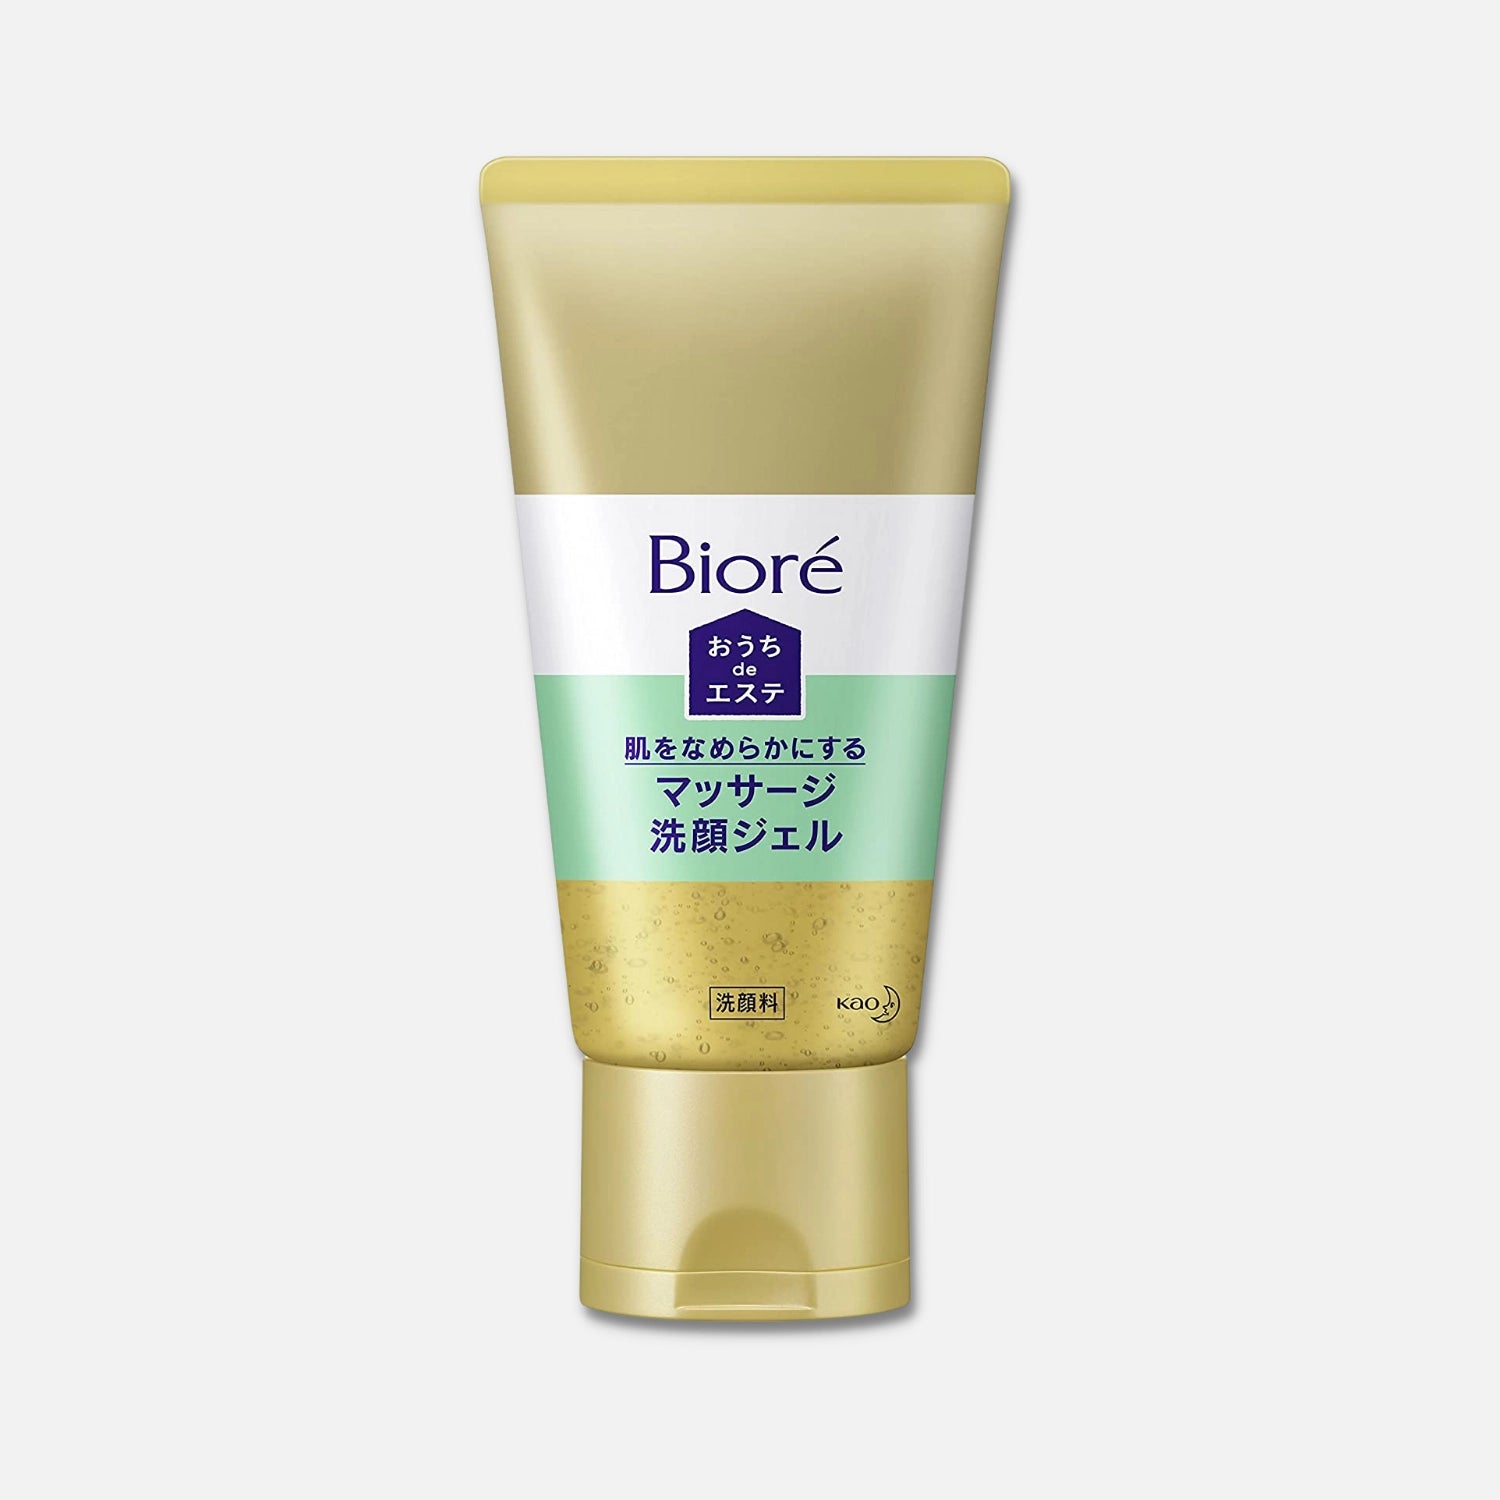 Biore Home Beauty Cleansing Gel - Buy Me Japan